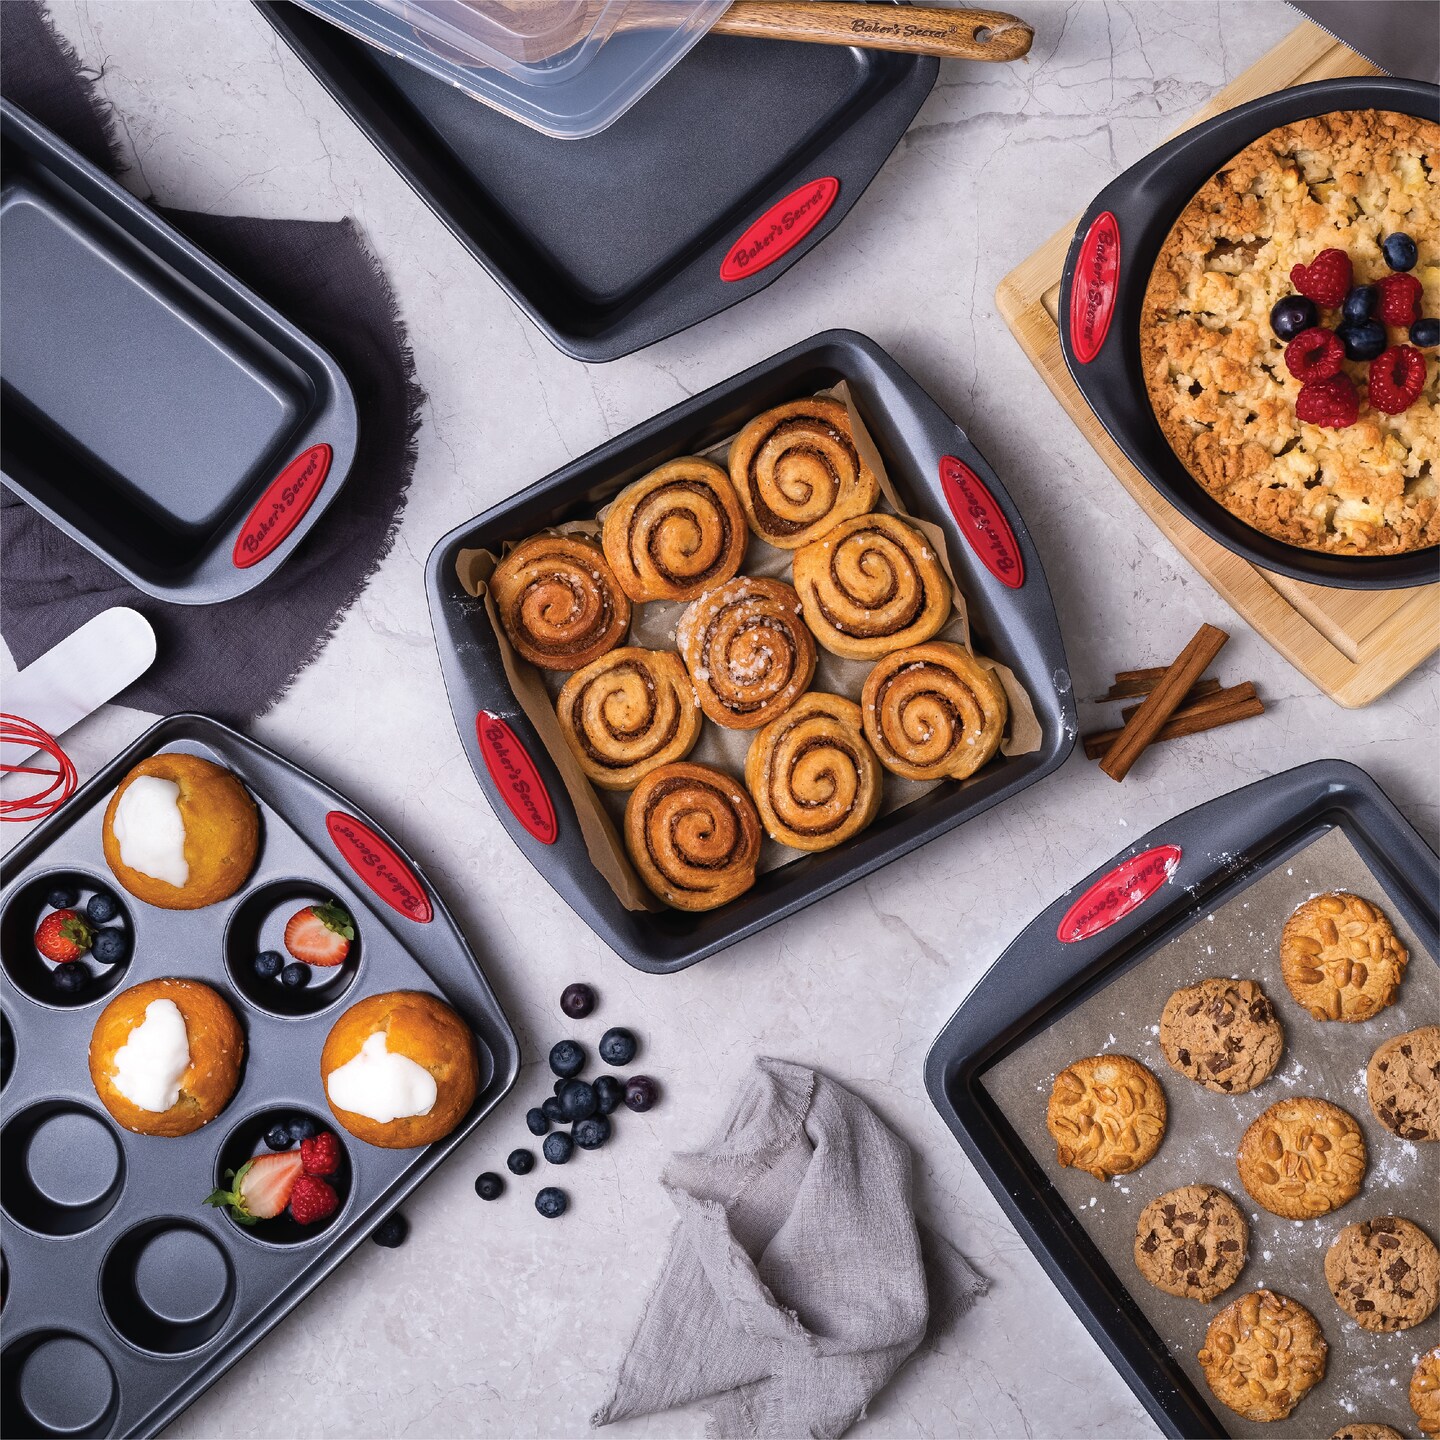 Baker's Secret Bakeware Sets - 8 Pieces Baking Pans Set with Grip